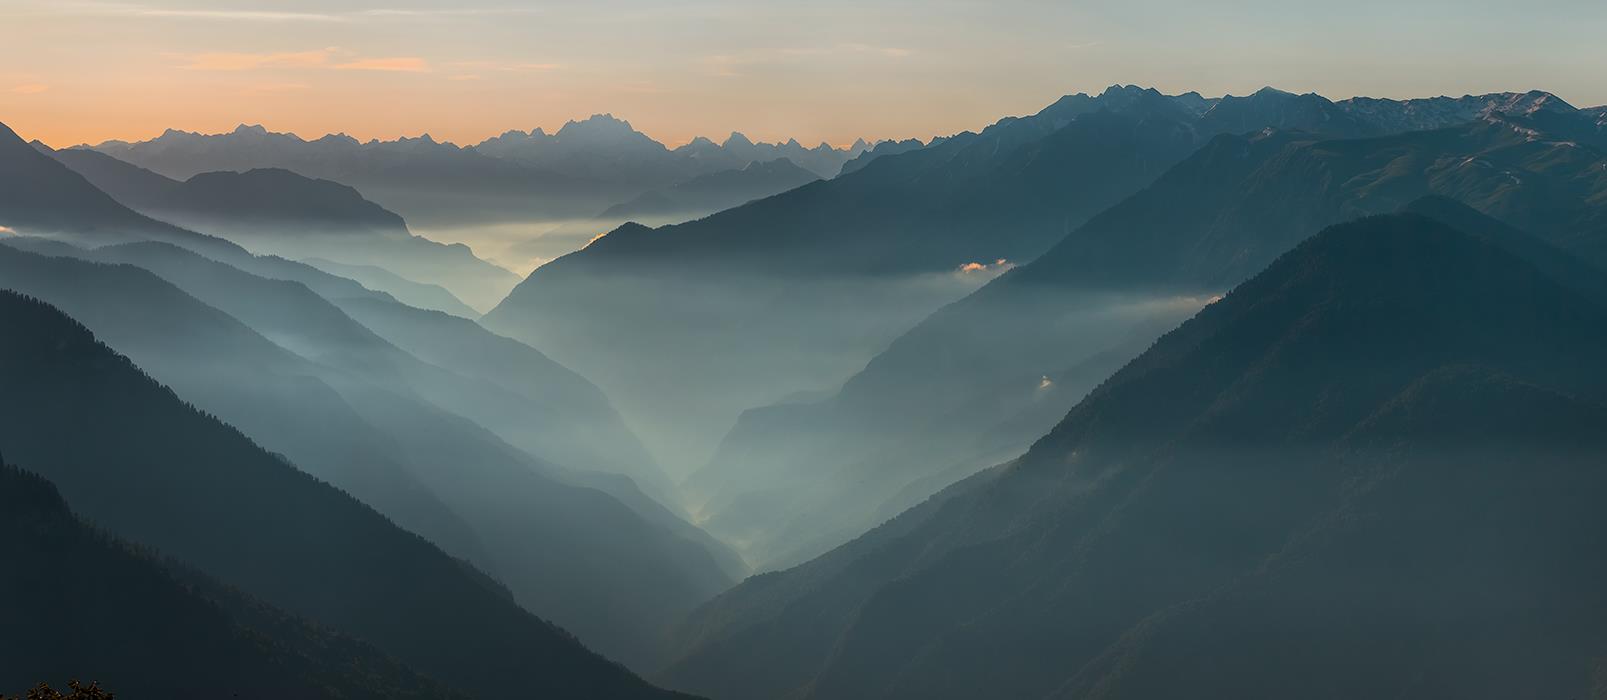 Туман в горной долине - интерьерная фотокартина